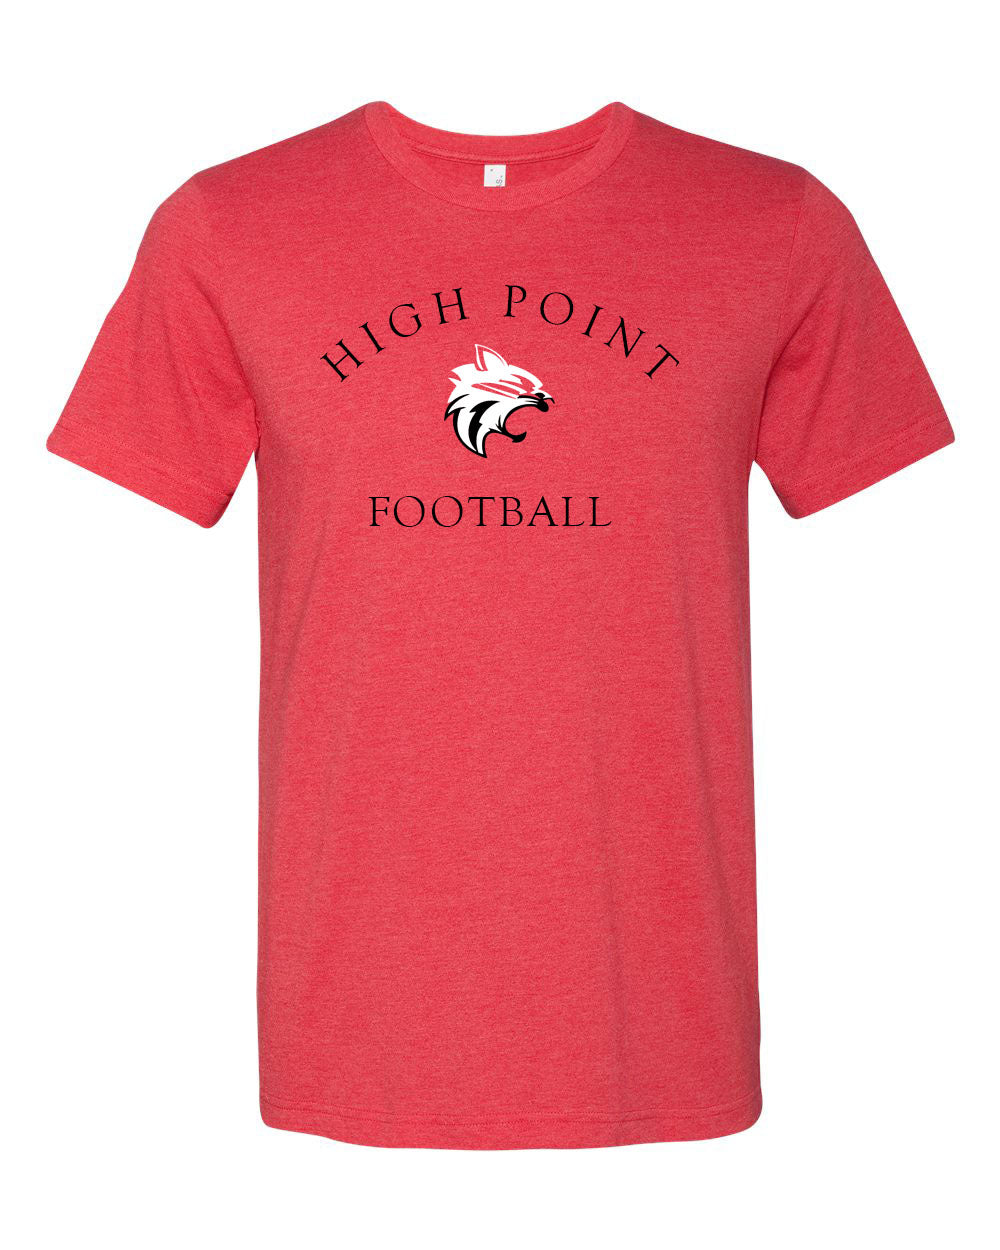 High Point Football design 3 T-Shirt